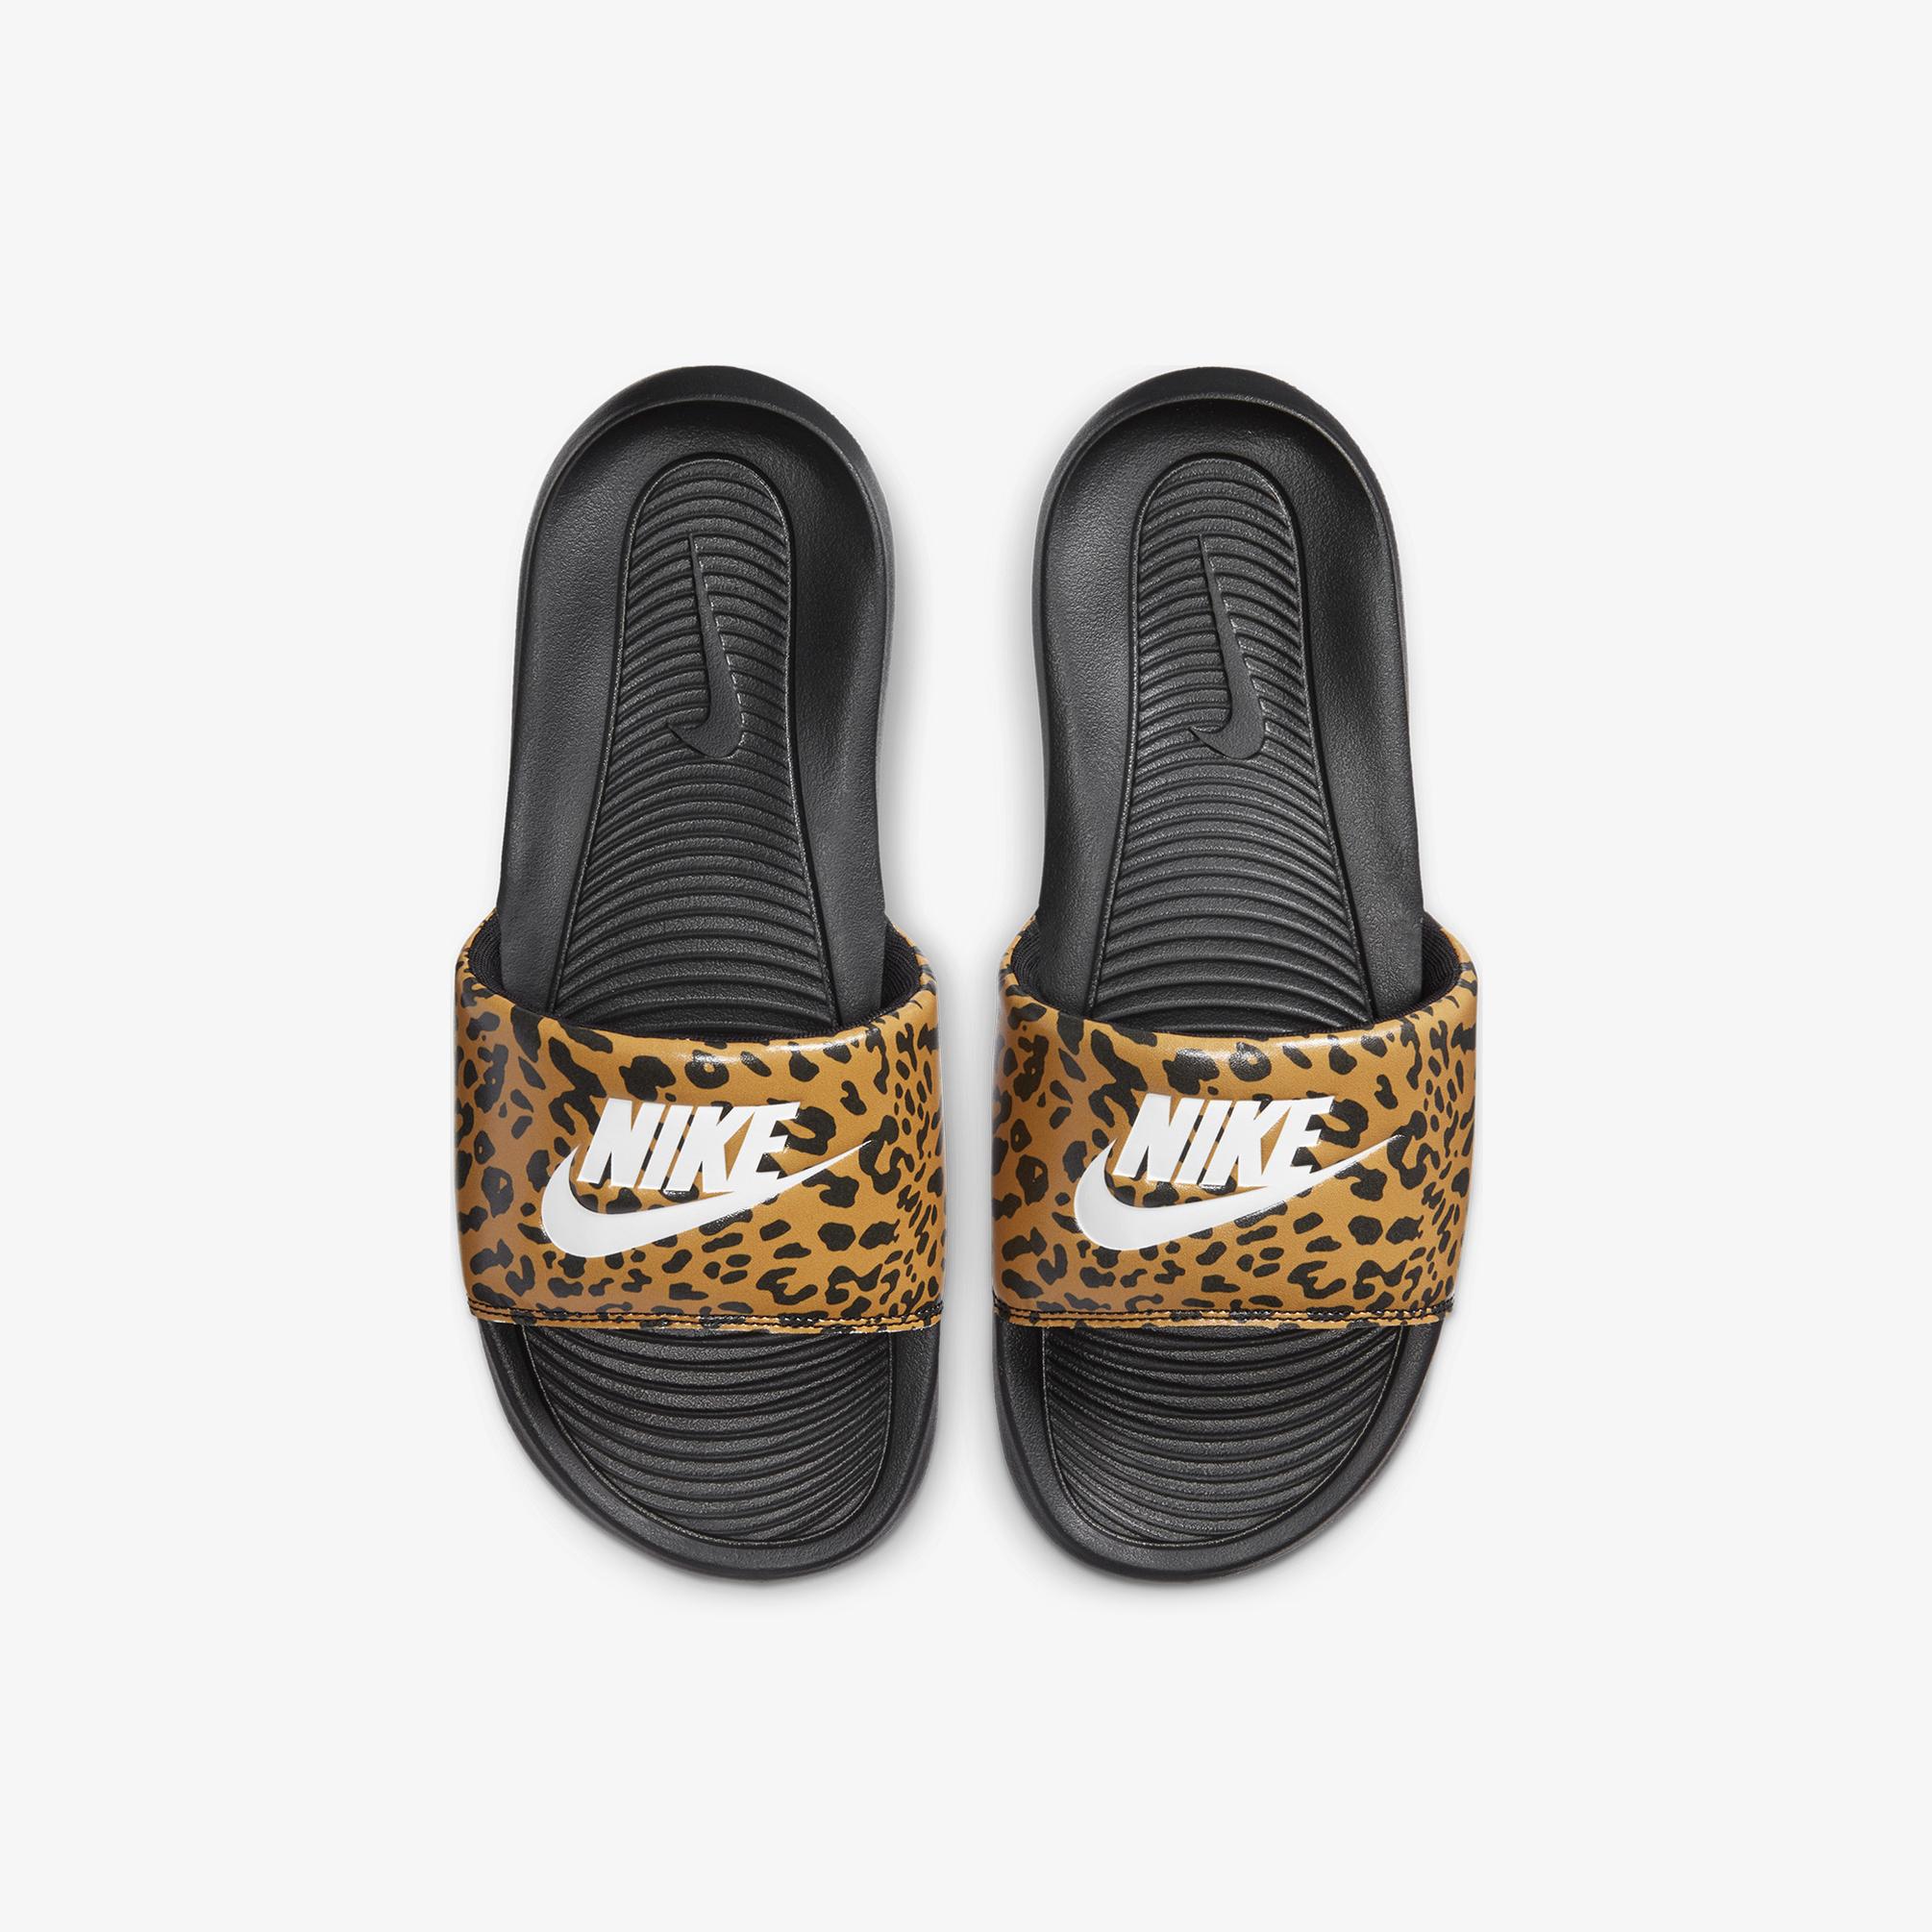  Nike Victori One Kadın Kahverengi Terlik